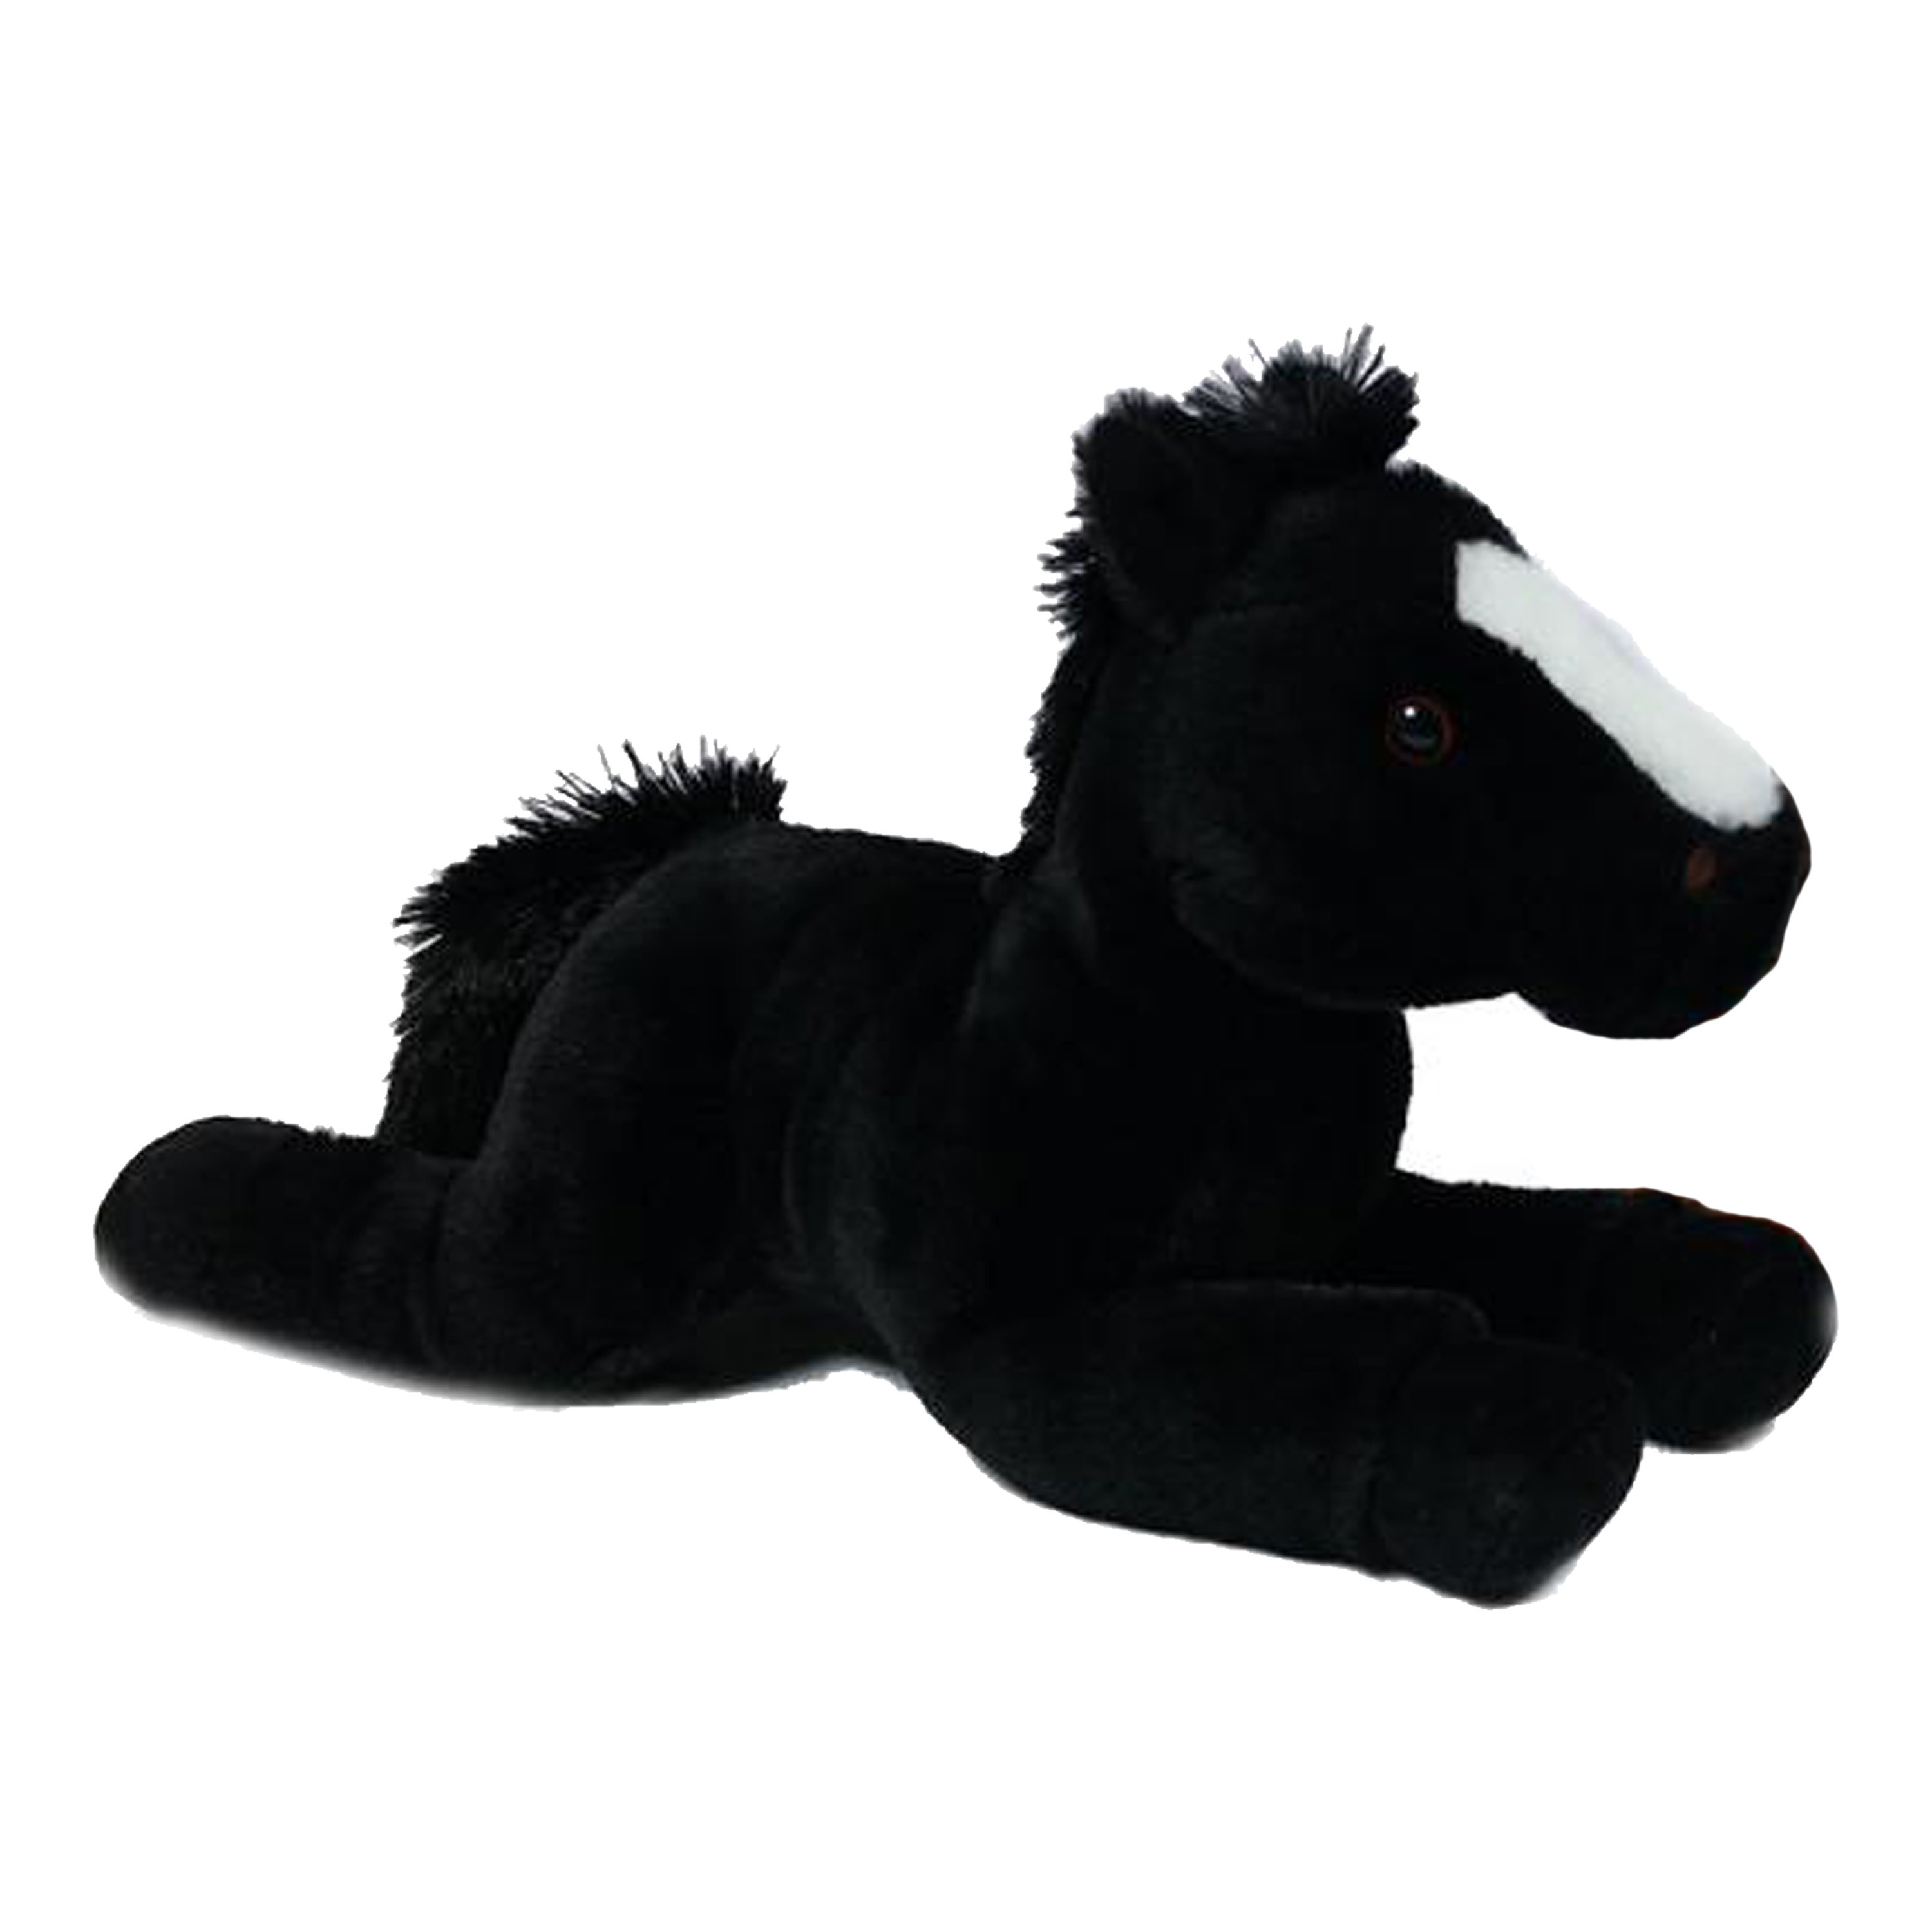 Knuffeldier Paard Winston zachte pluche stof premium kwaliteit knuffels zwart 35 cm